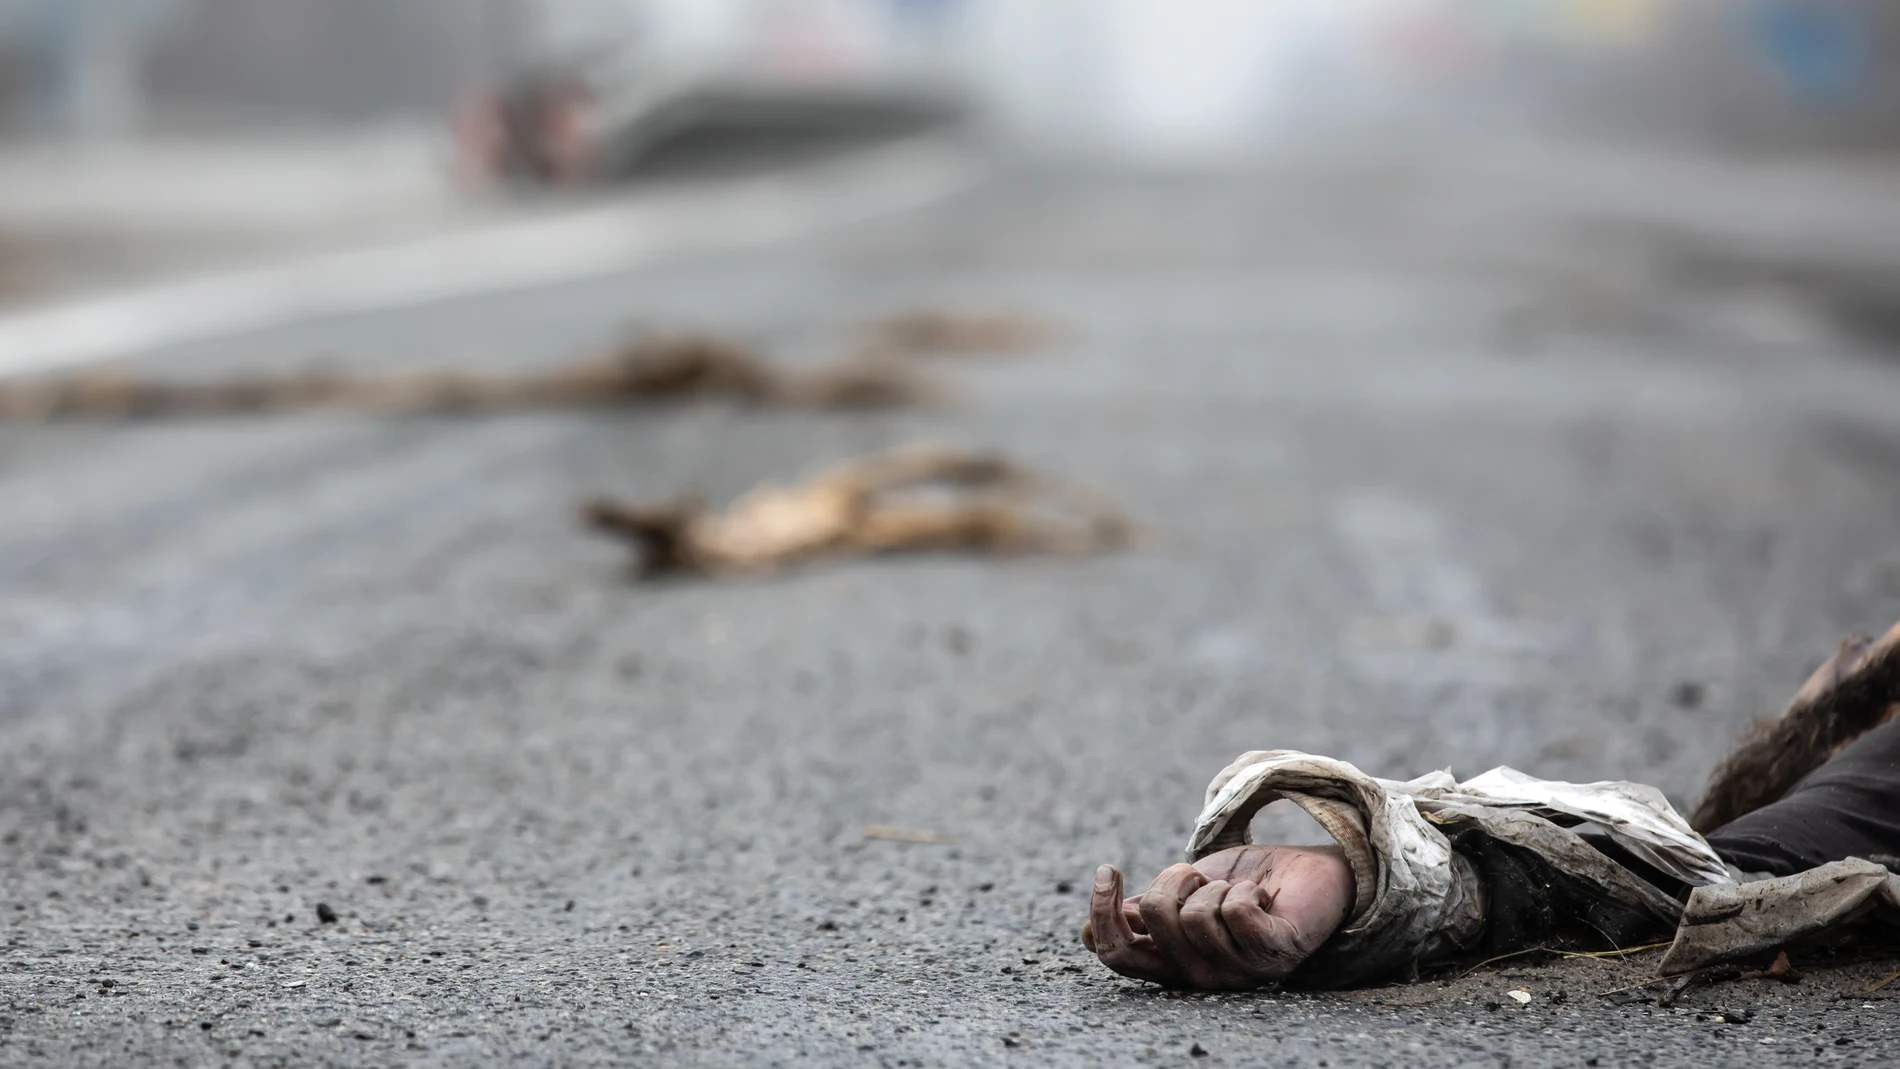 El ministro ucraniano de Exteriores, Dmytro Kuleba, afirmó que es la peor “masacre” en Europa desde la II Guerra Mundial